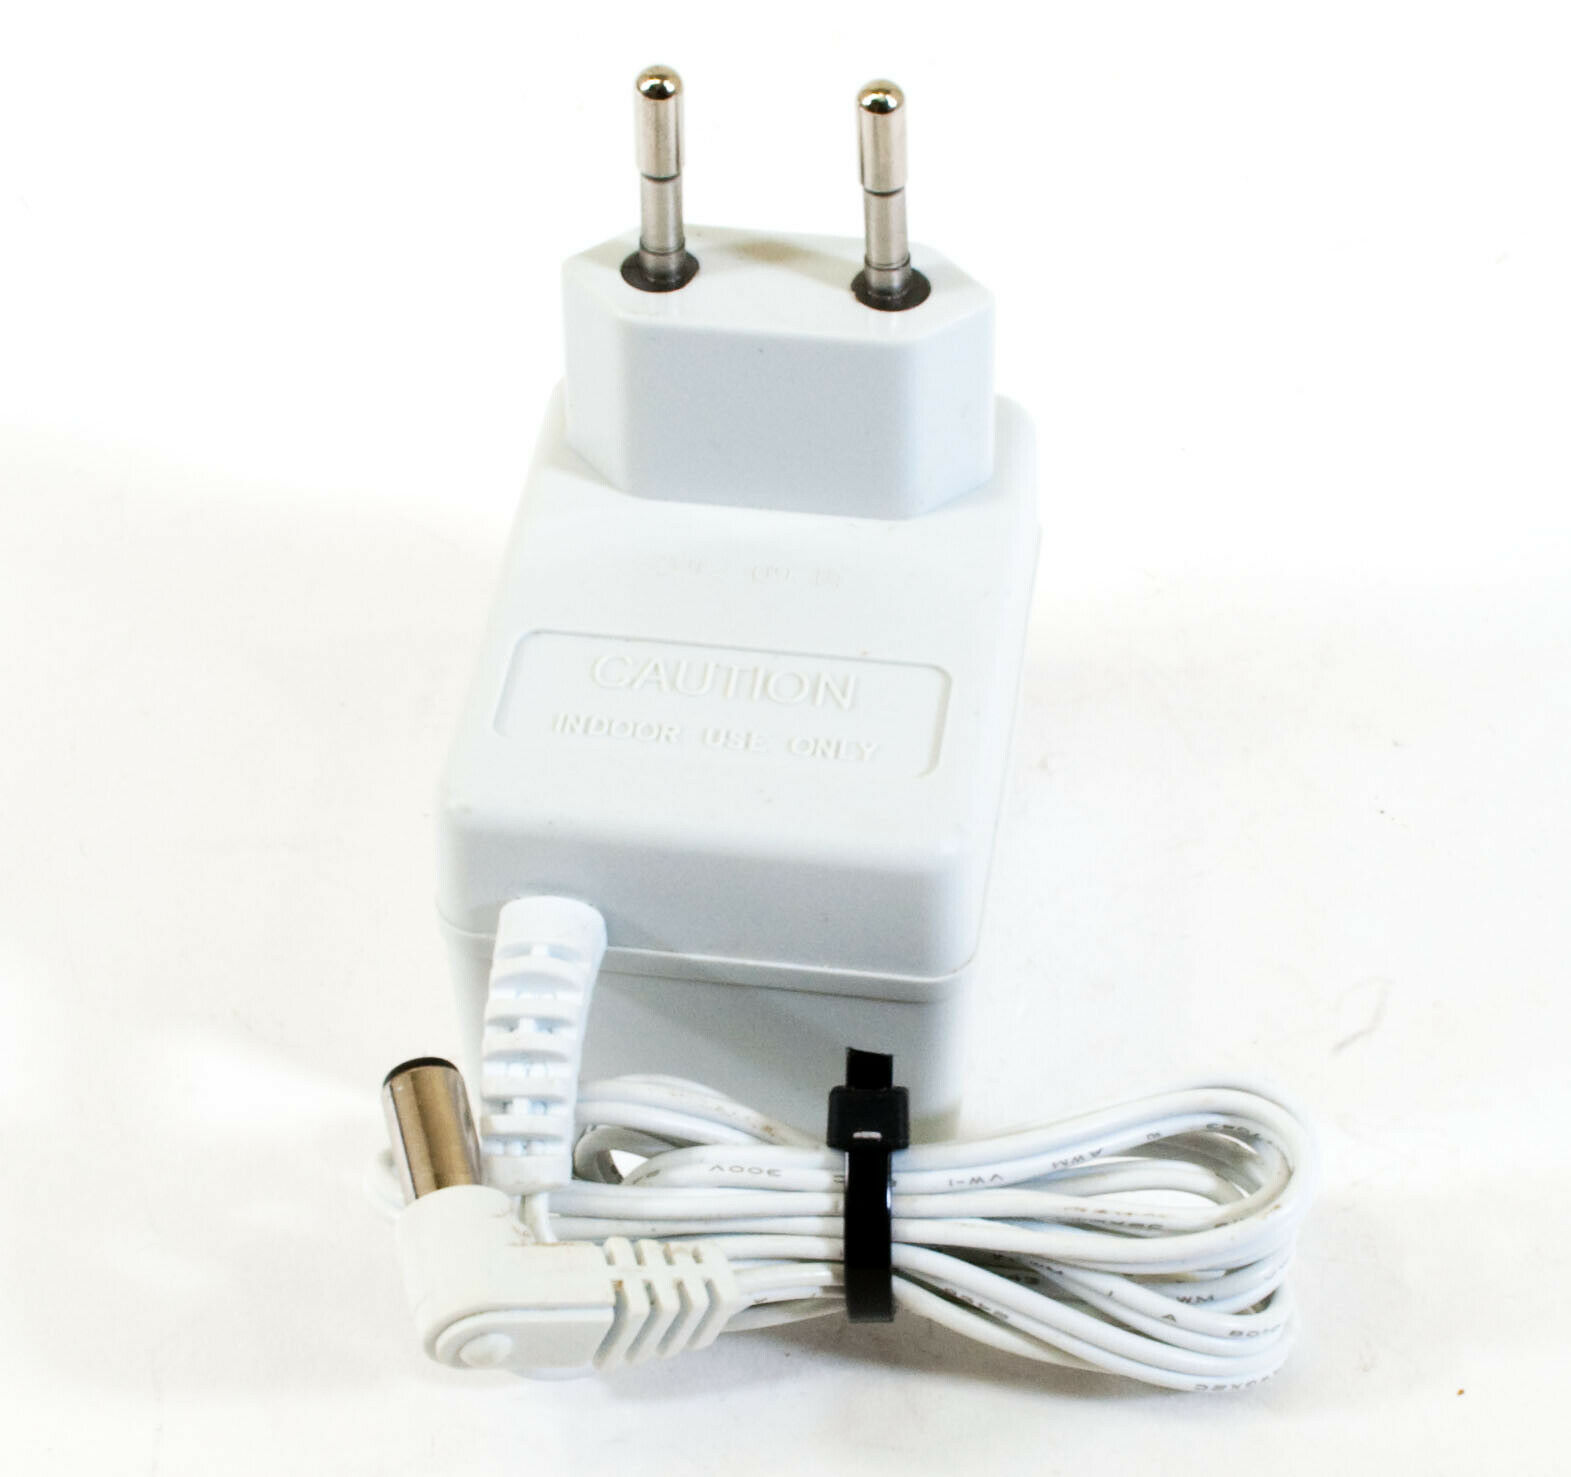 Black Decker VA090020D AC Adapter 9V 200mA Original Power Supply Europlug Output Current: 200 mA Voltage: 9 V MPN: VA